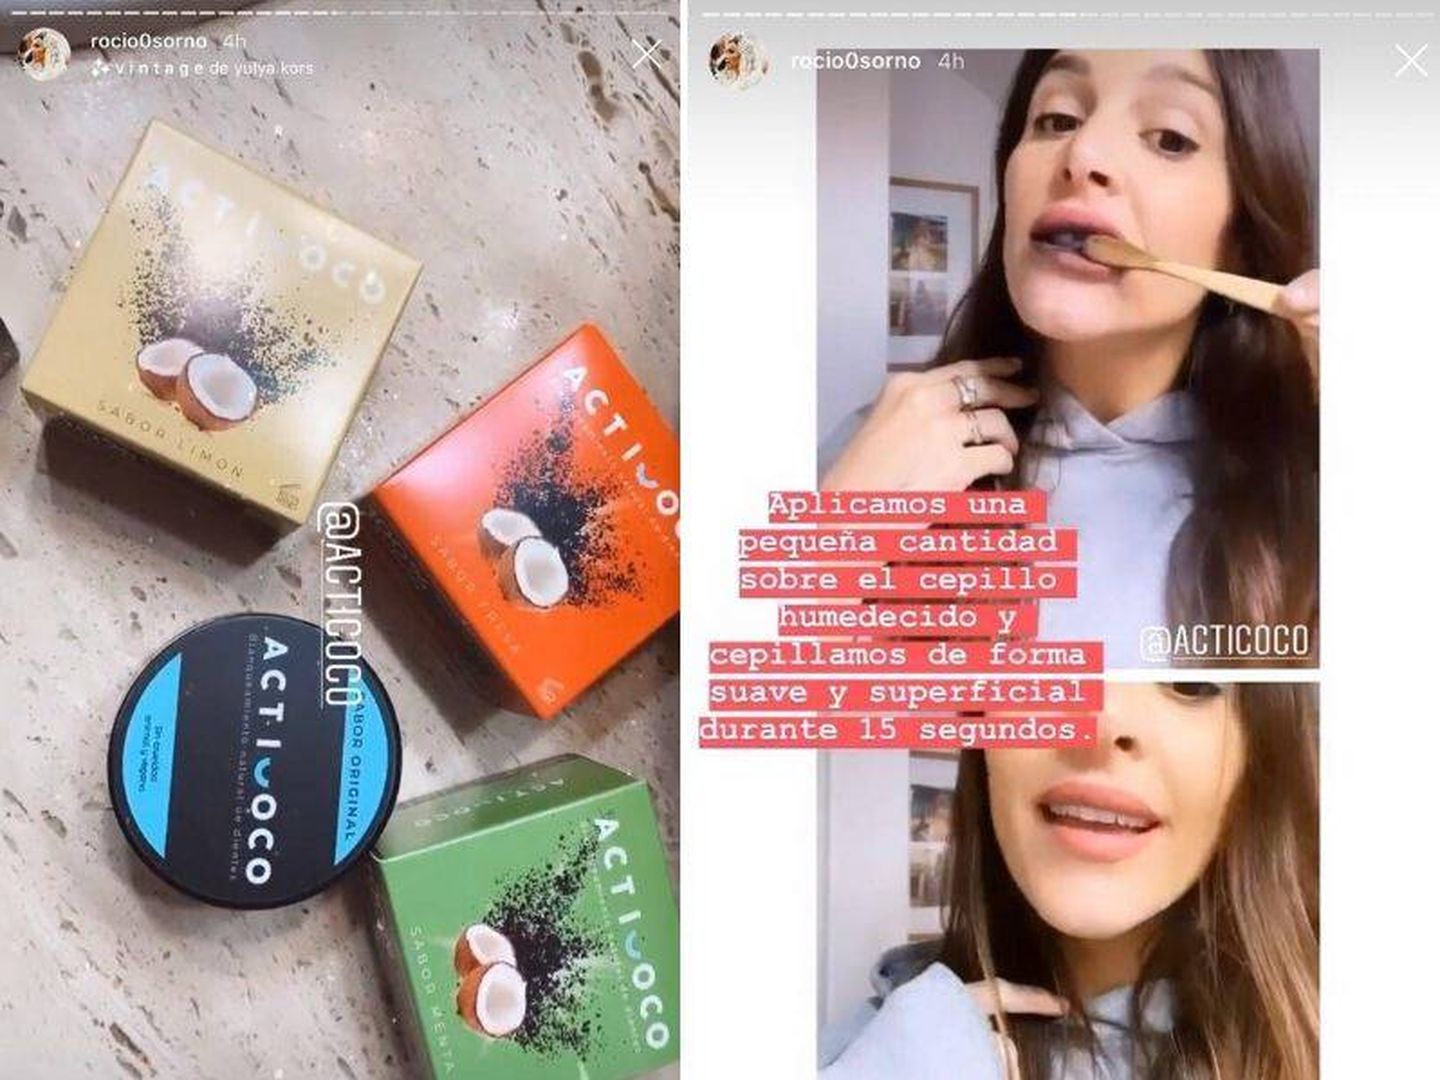 Rocío Osorno usando Acticoco. (Instagram, @rocio0sorno)